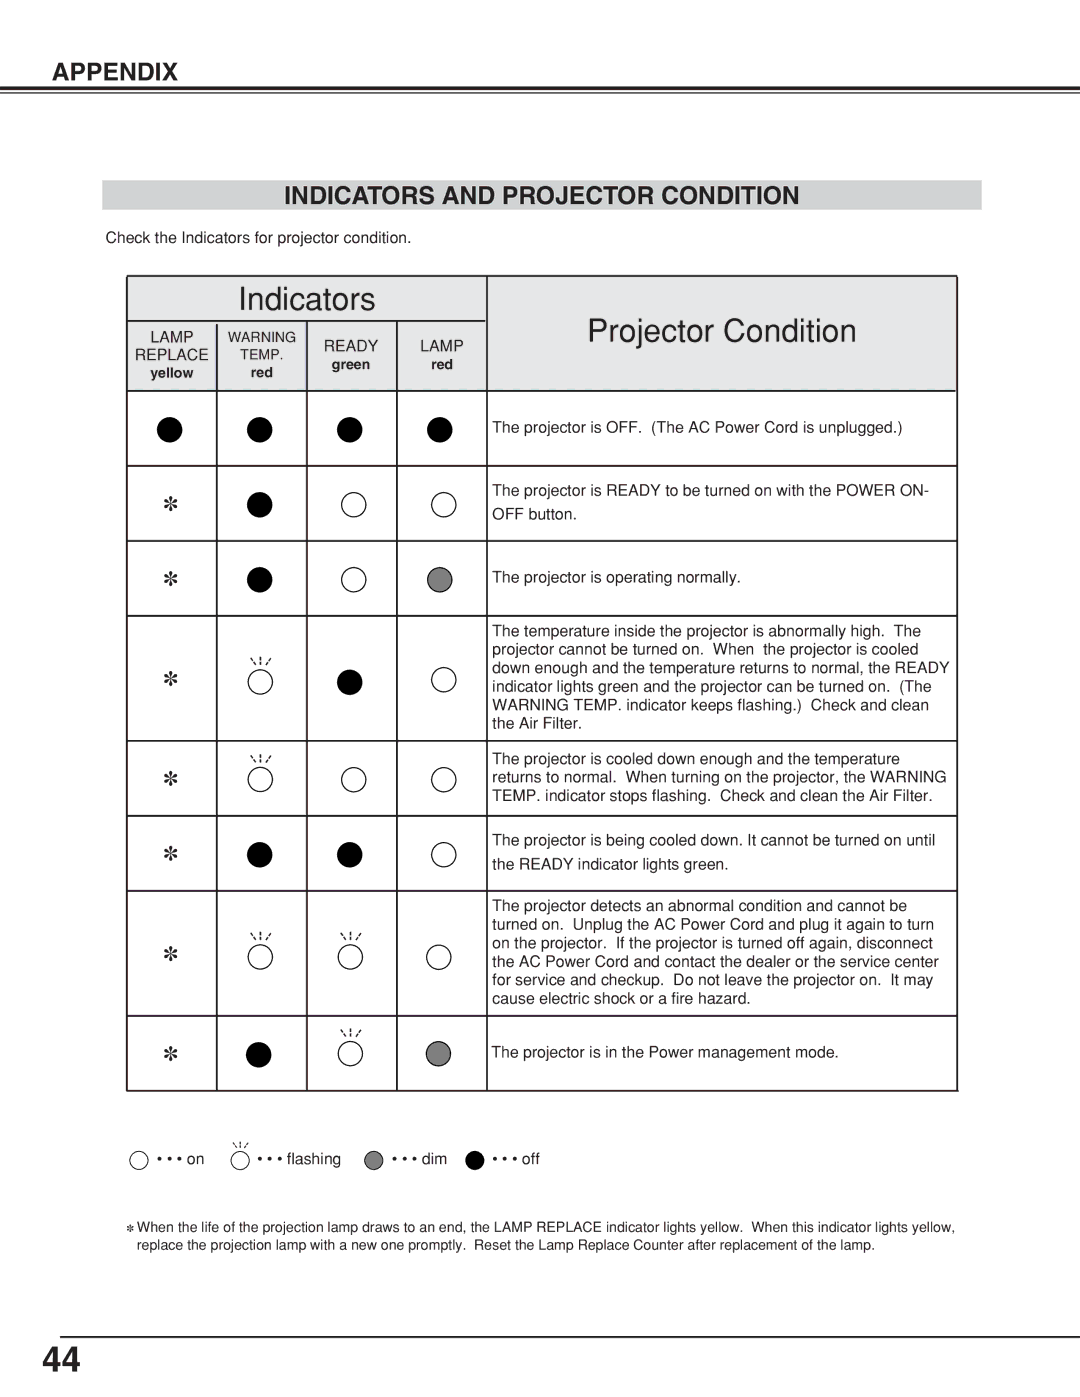 BOXLIGHT CP-320t manual Indicators Projector Condition, Appendix Indicators and Projector Condition 